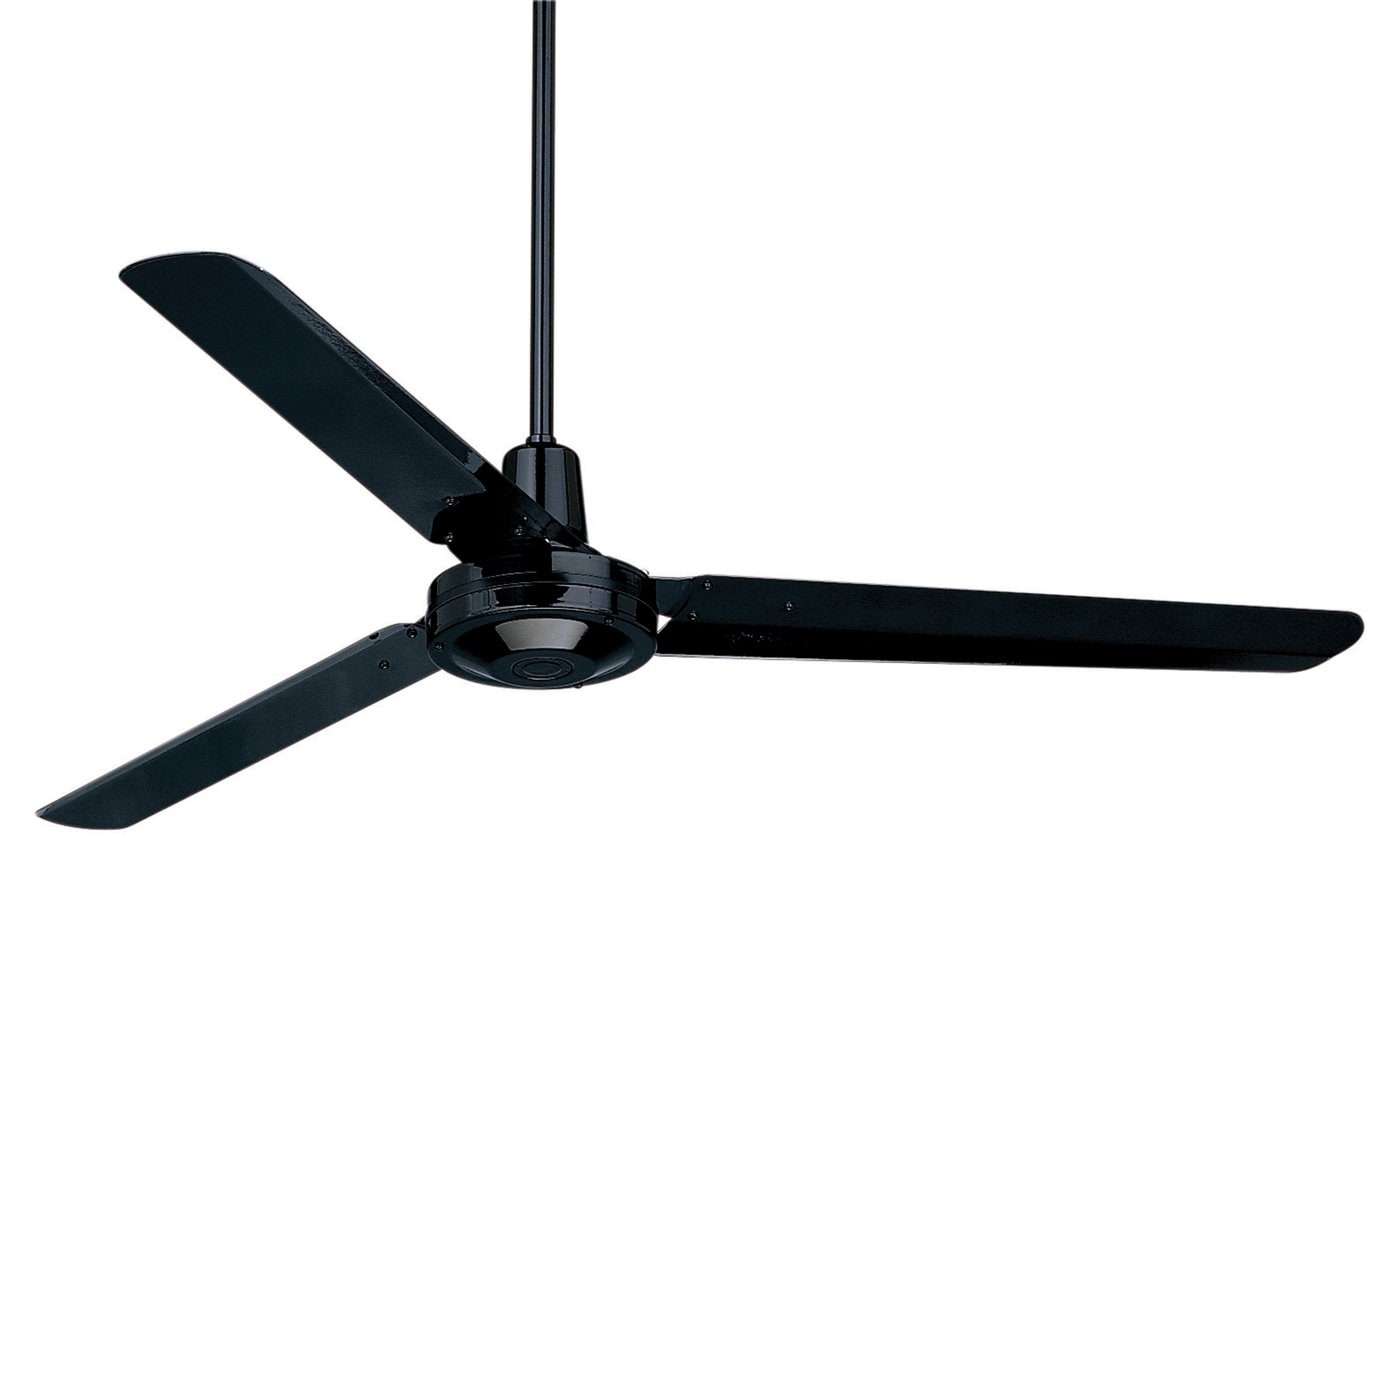 EMERSON 56" Industrial Ceiling Fan w/ 3 Blades Barbeque Black  HF956BQ 